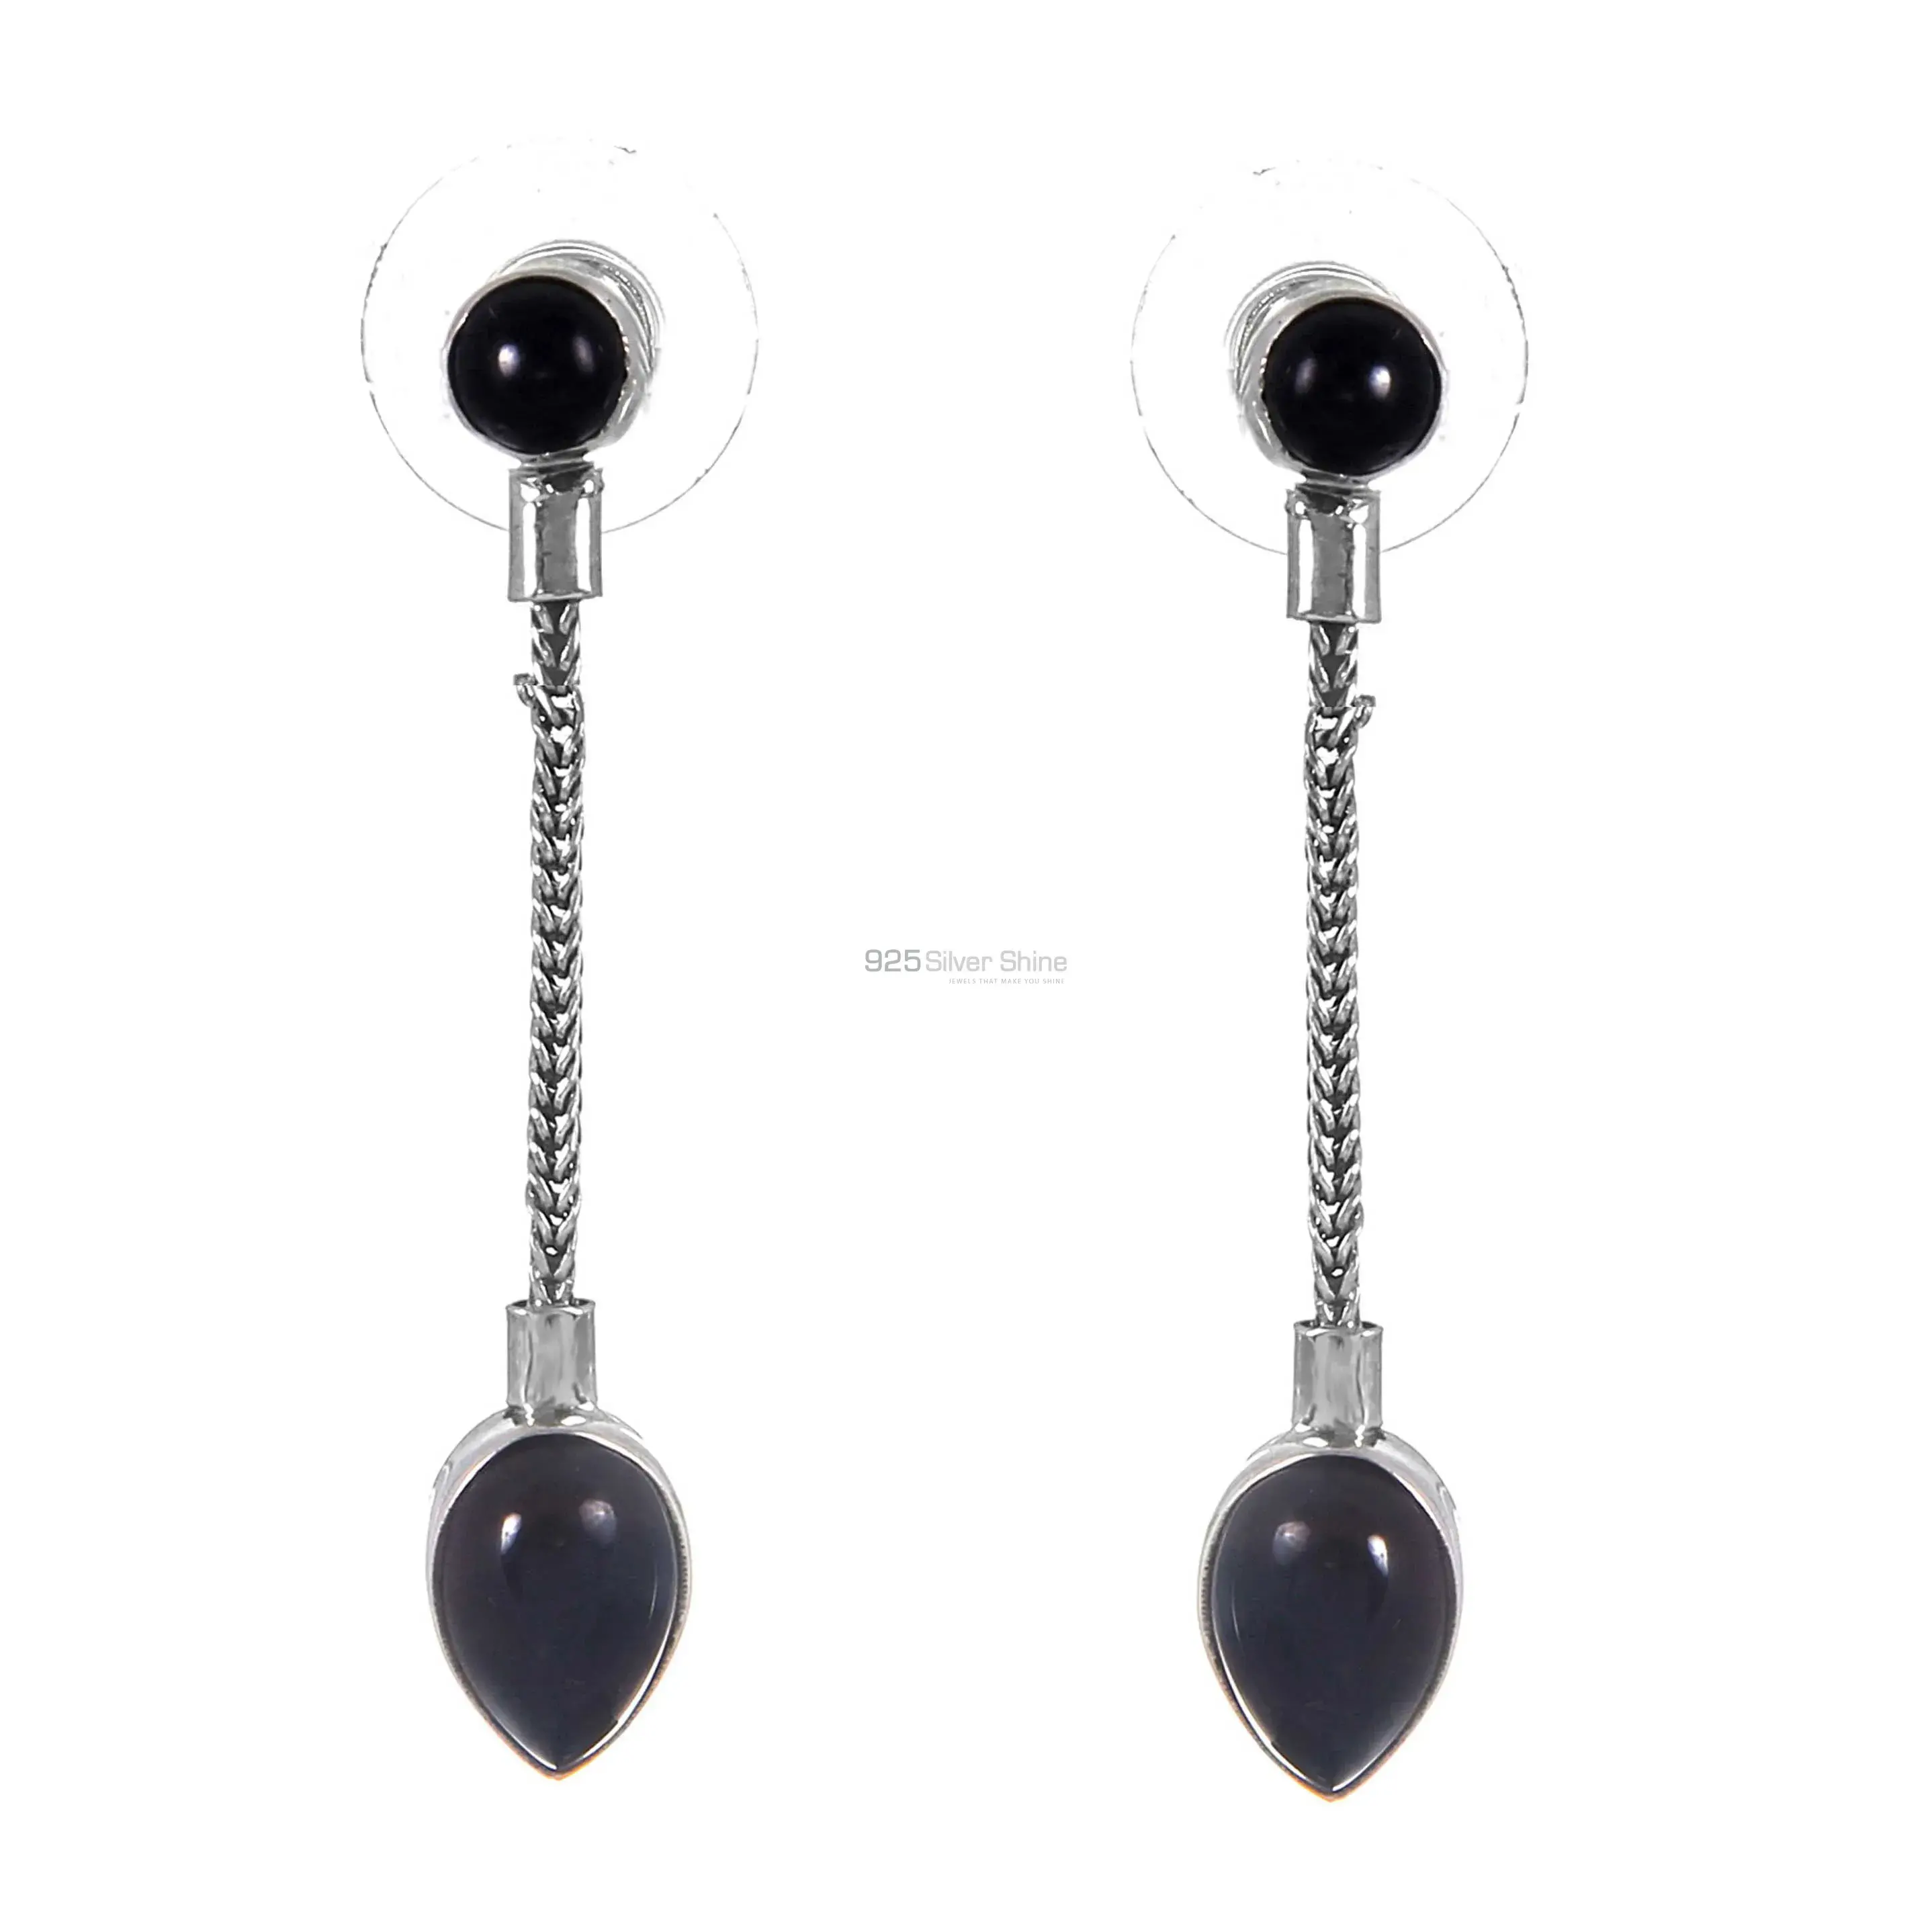 Semi Precious Black onyx Gemstone Earrings Suppliers In 925 Sterling Silver Jewelry 925SE257